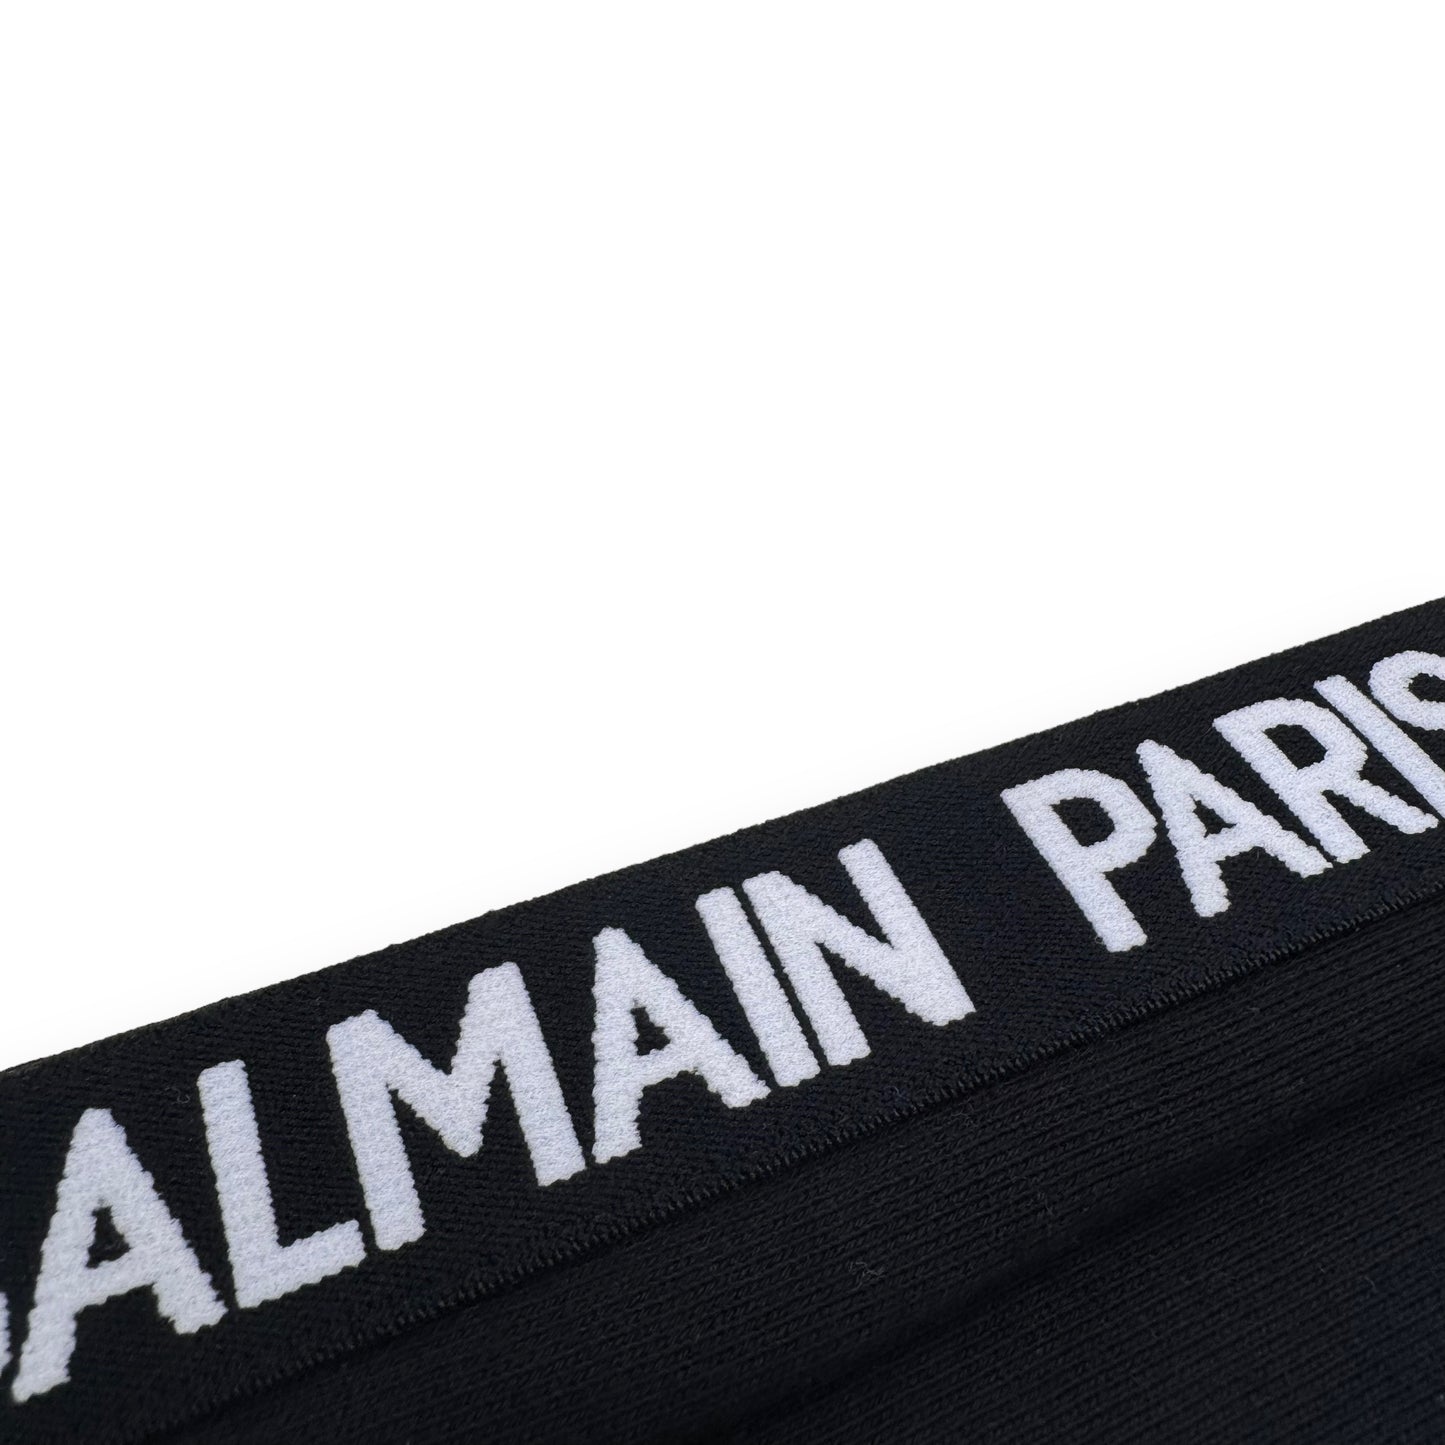 BALMAIN EMBOSSED LOGO SWEATPANTS BLACK XL